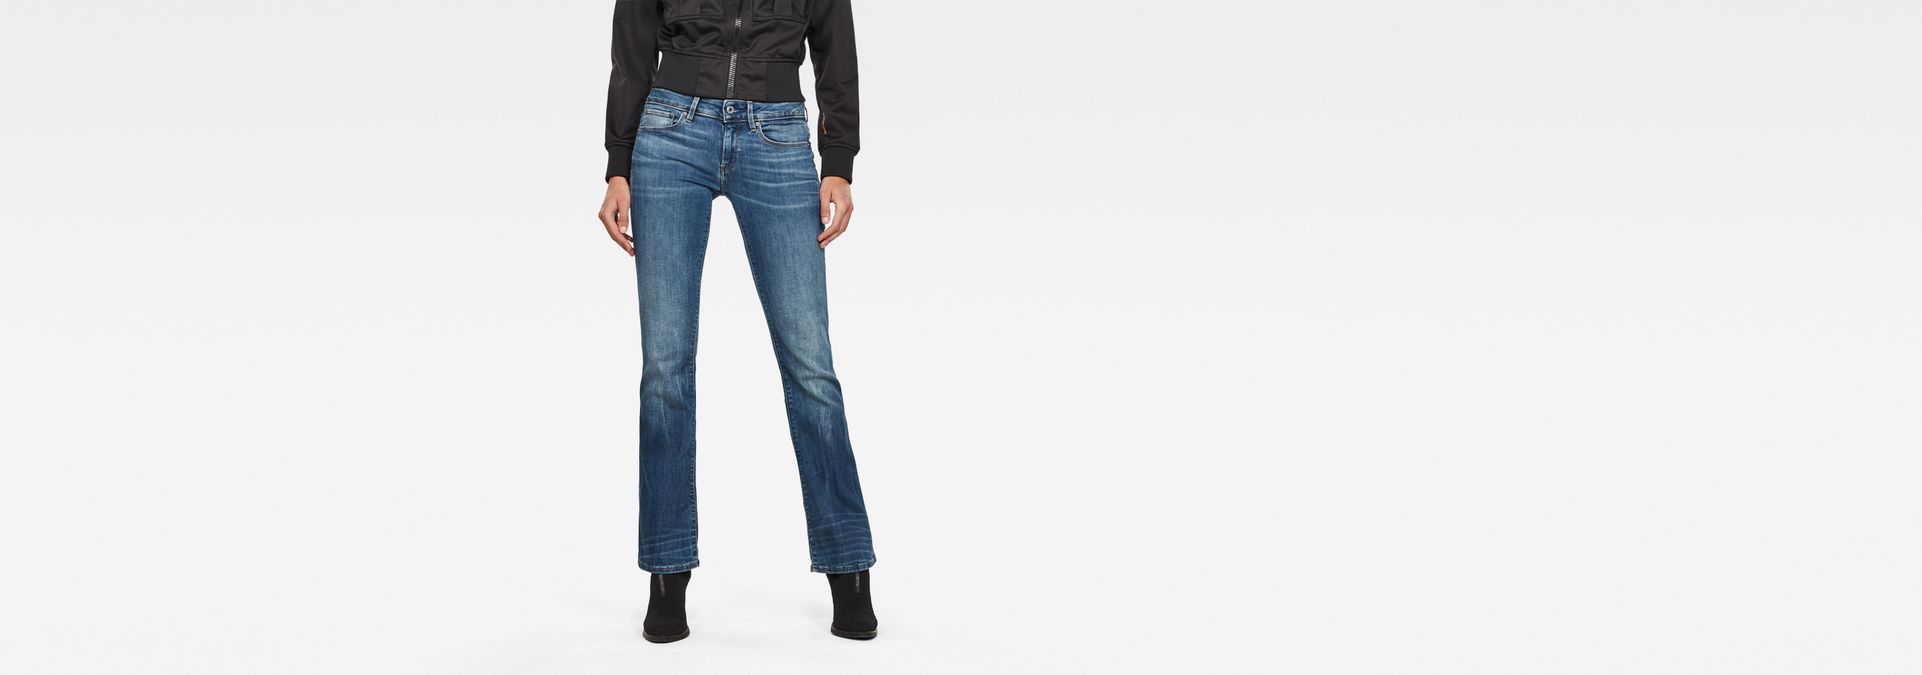 g star bootcut jeans women's